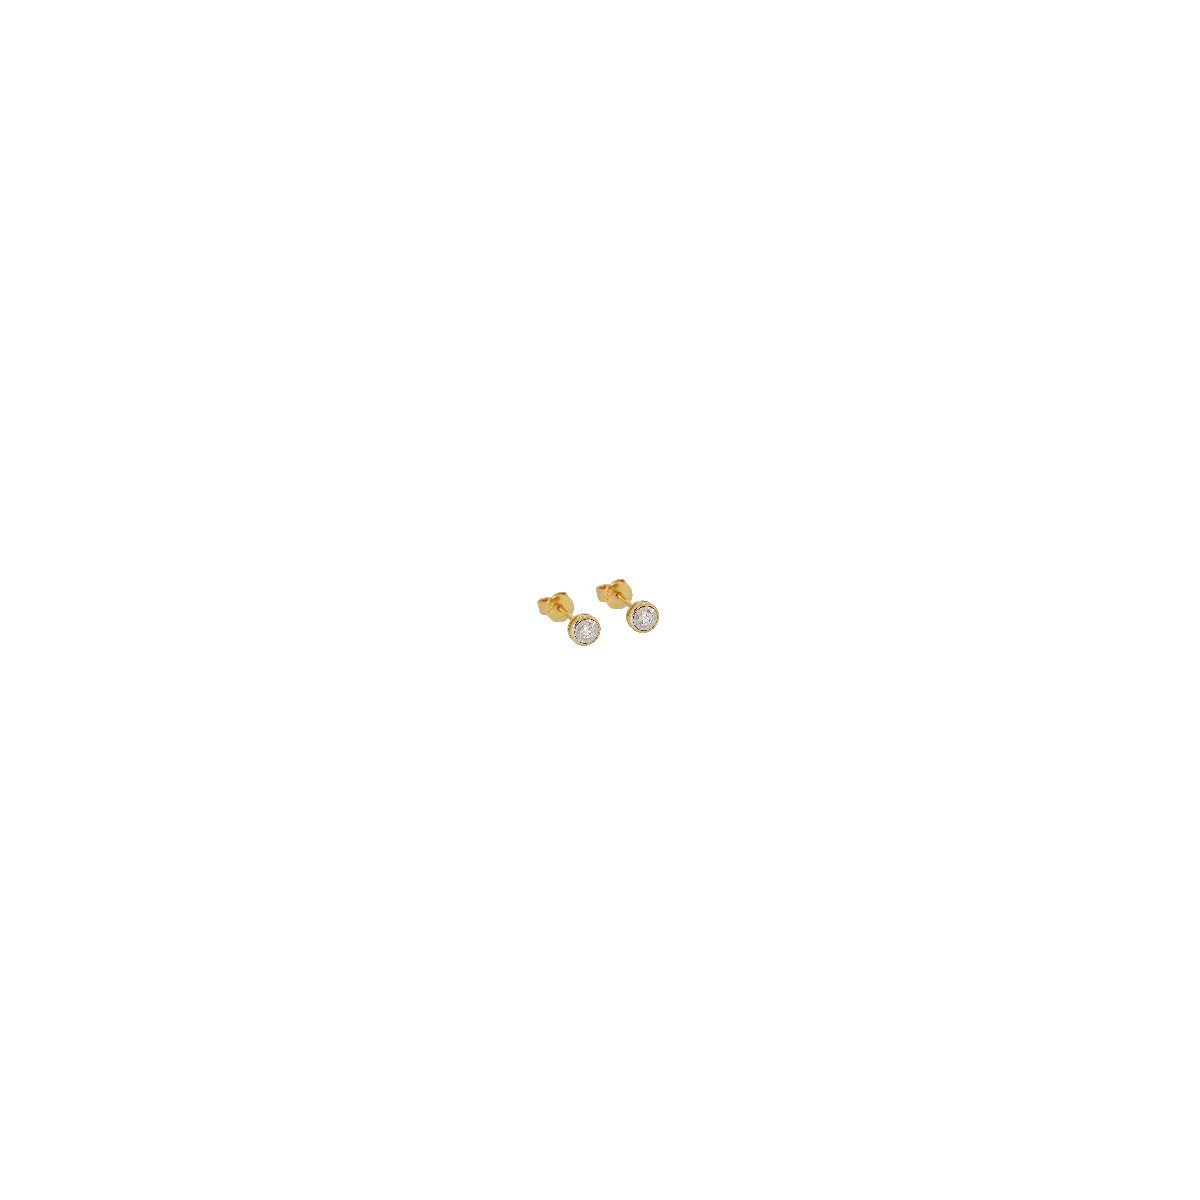 Par Aros de Oro Amarillo Diamante - E-KMJI-29406 0,08PT